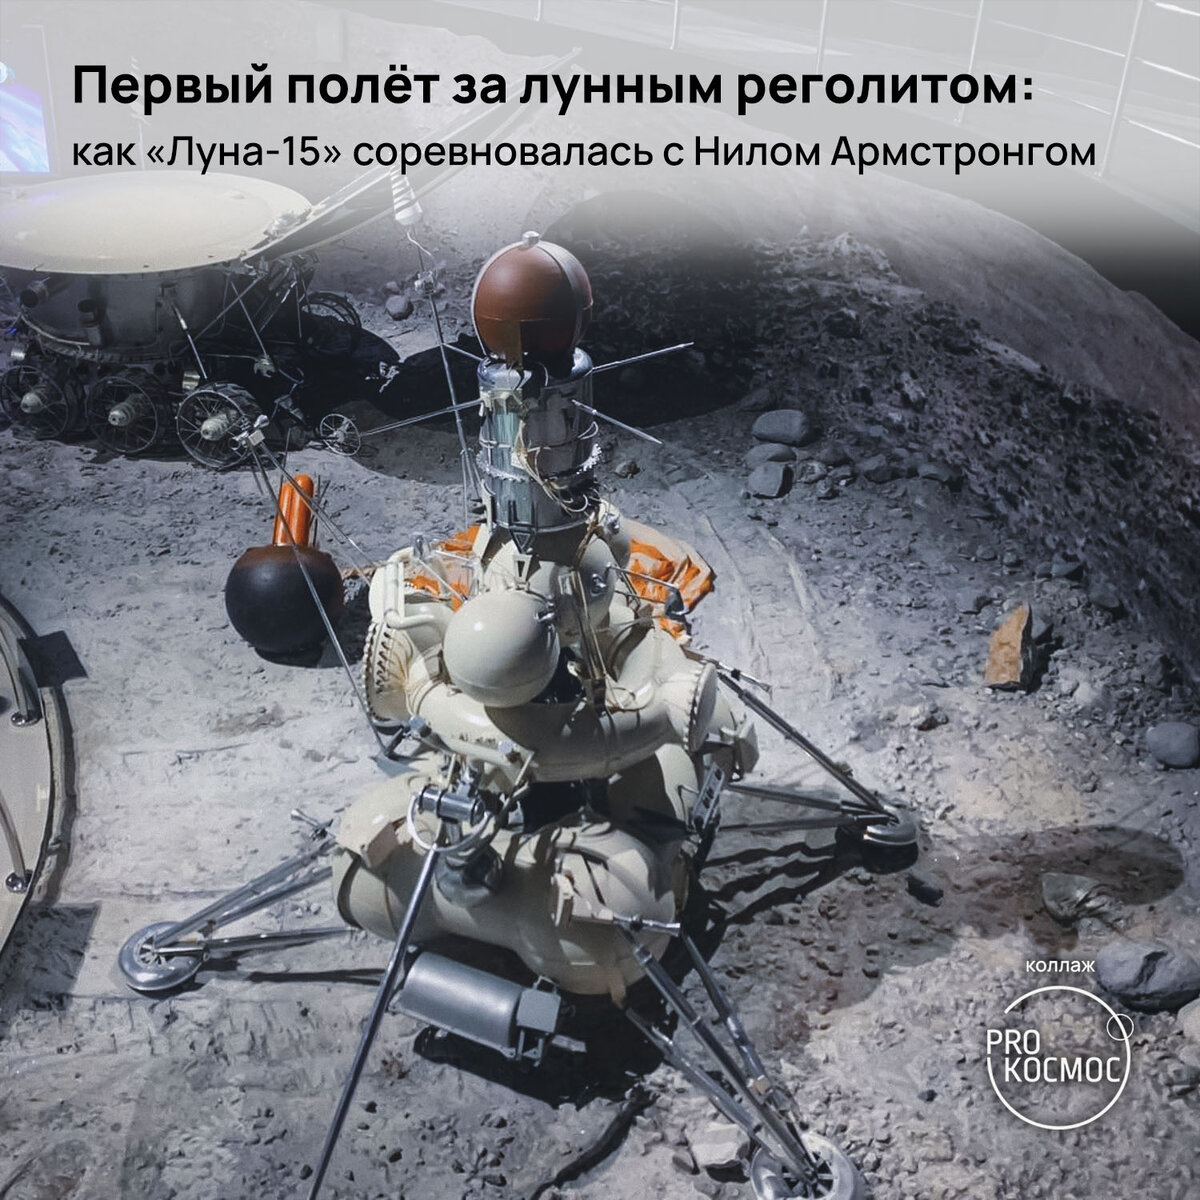 15 апреля луна. Лунная программа. Станция Луна 15. Лунная программа СССР. Реголит на Луне.